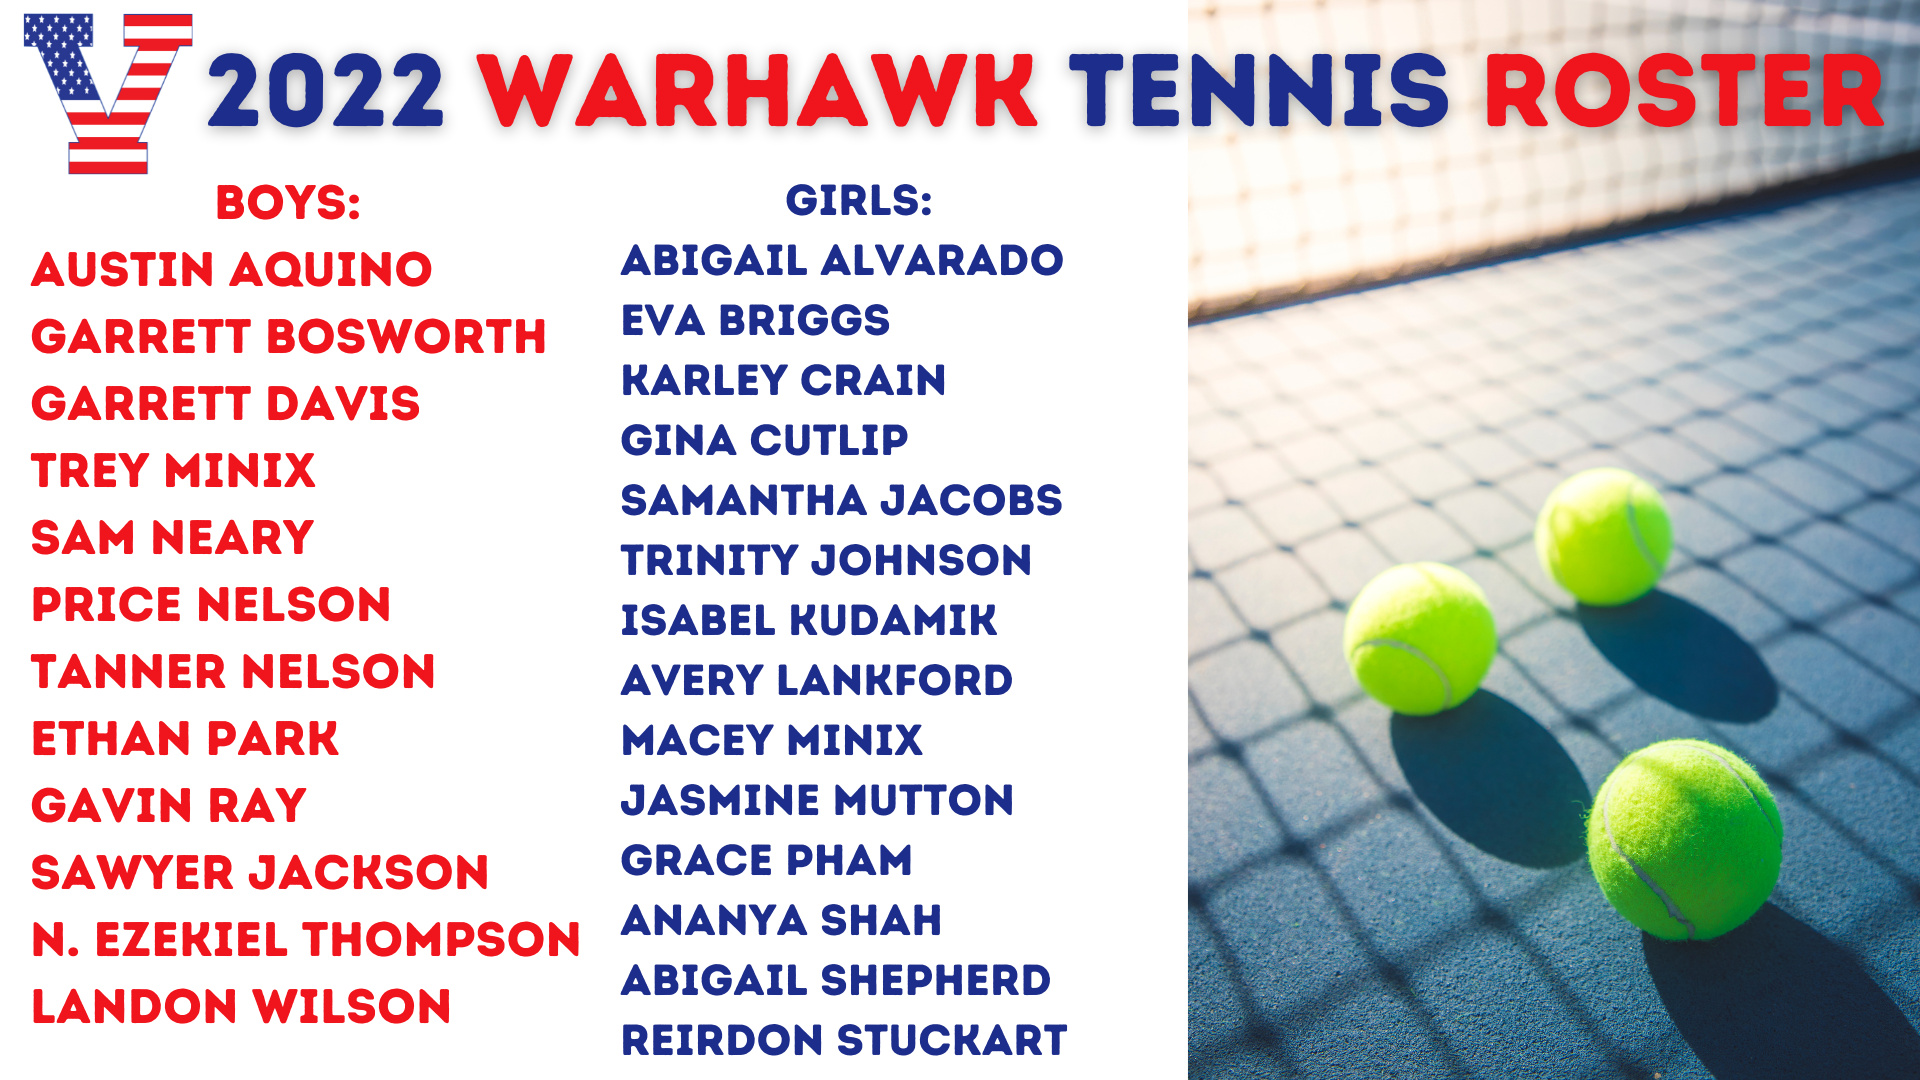 2022 Warhawk Tennis Roster